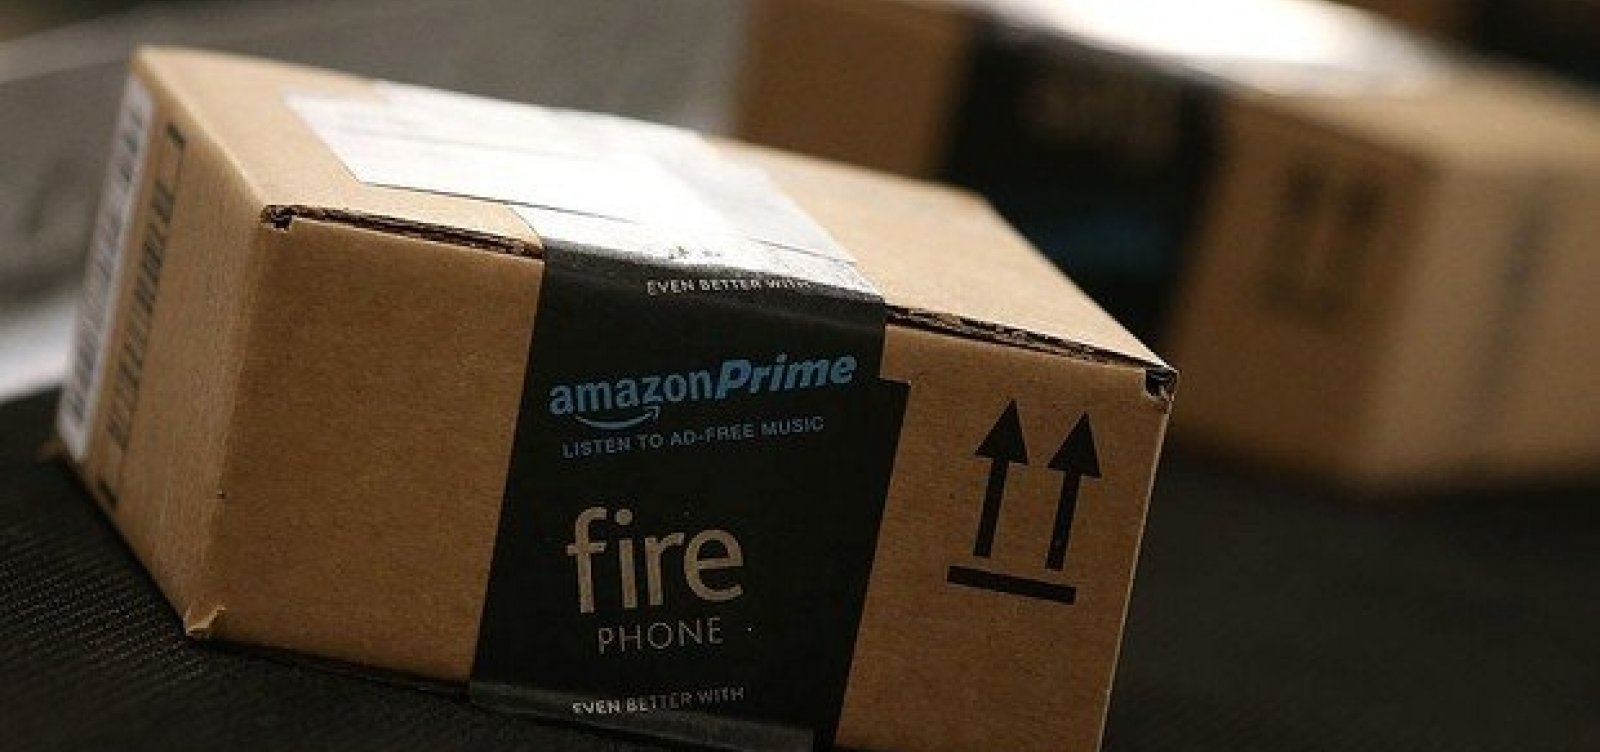 Ações de varejistas caem após lançamento da Amazon Prime no Brasil 